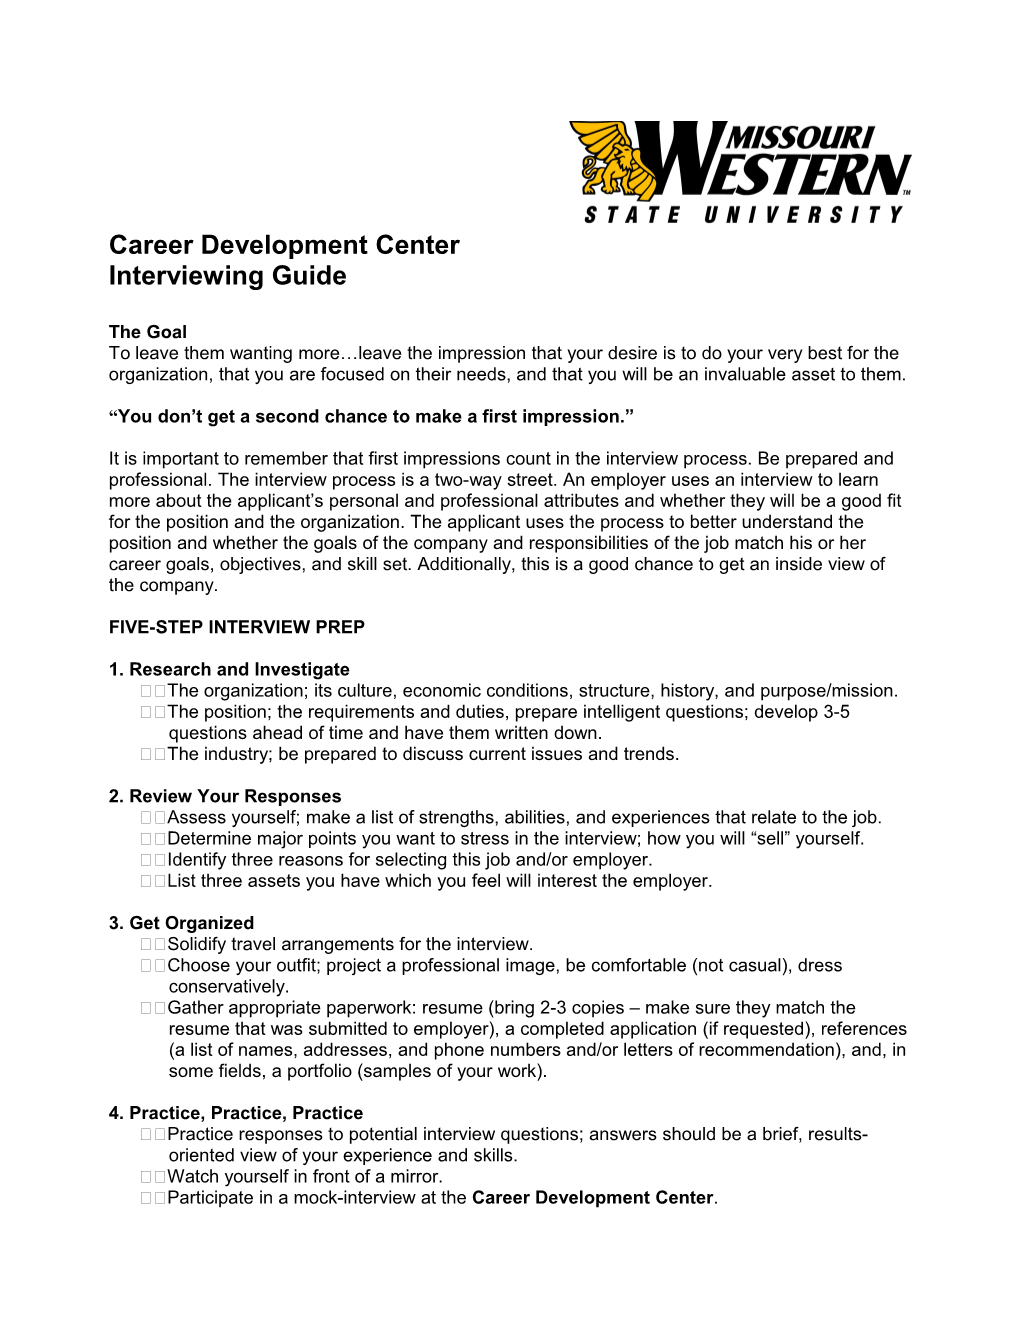 Career Development Center